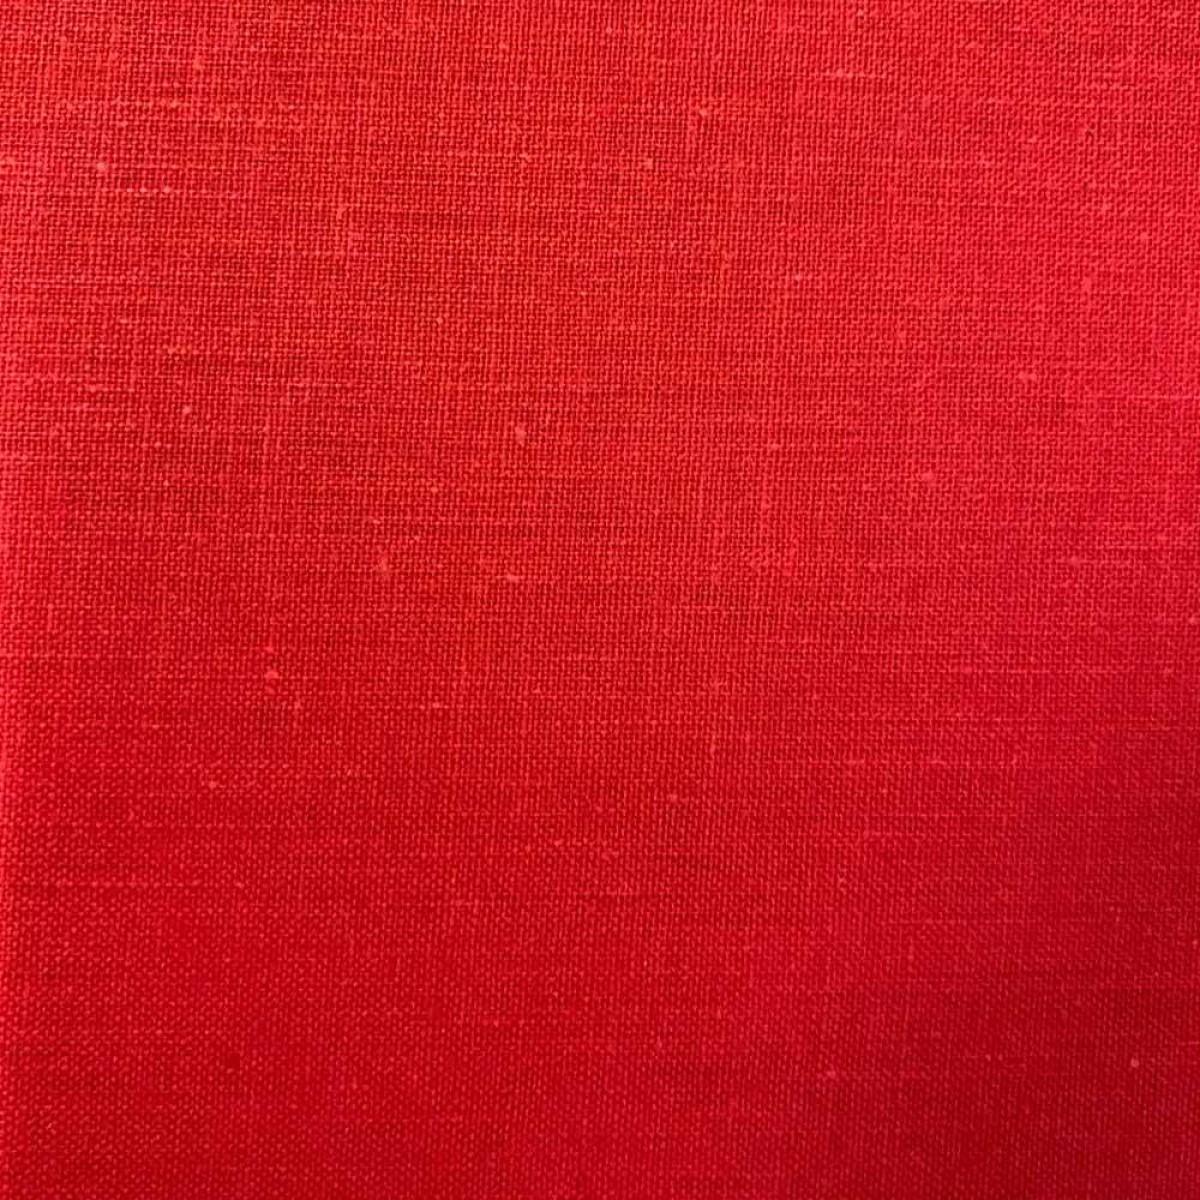 Σεντόνι με λάστιχο polycotton μονό 100x200+25cm κόκκινο χρώμα TNS 39-958-0417